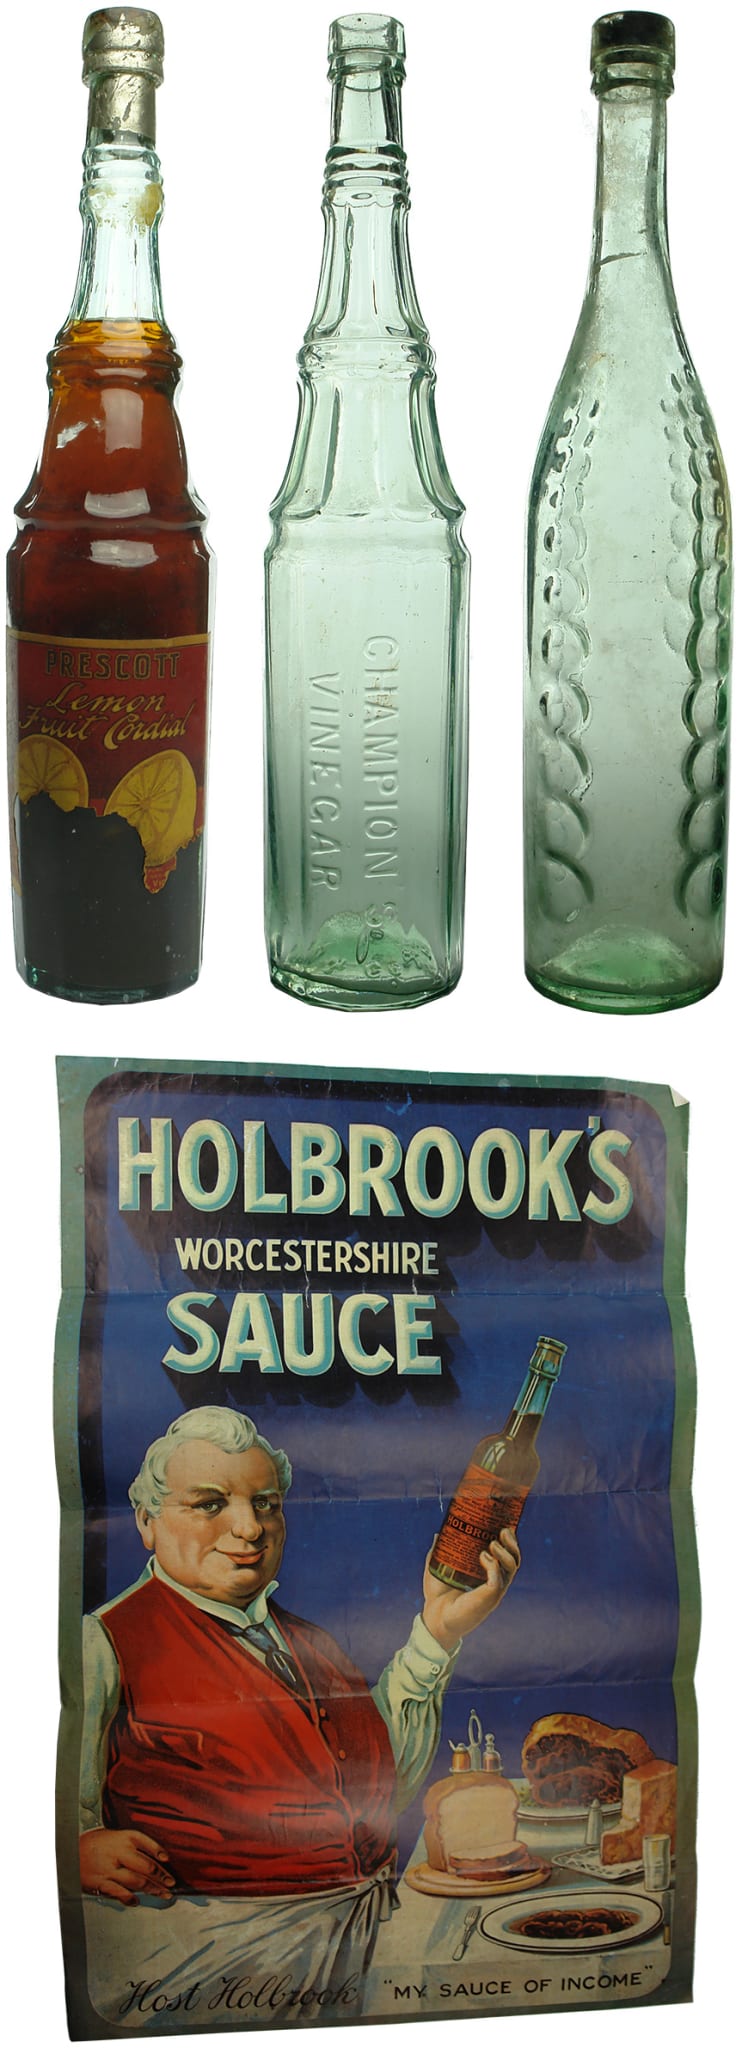 Vinegar Bottles Advertising Holbrooks Sauce